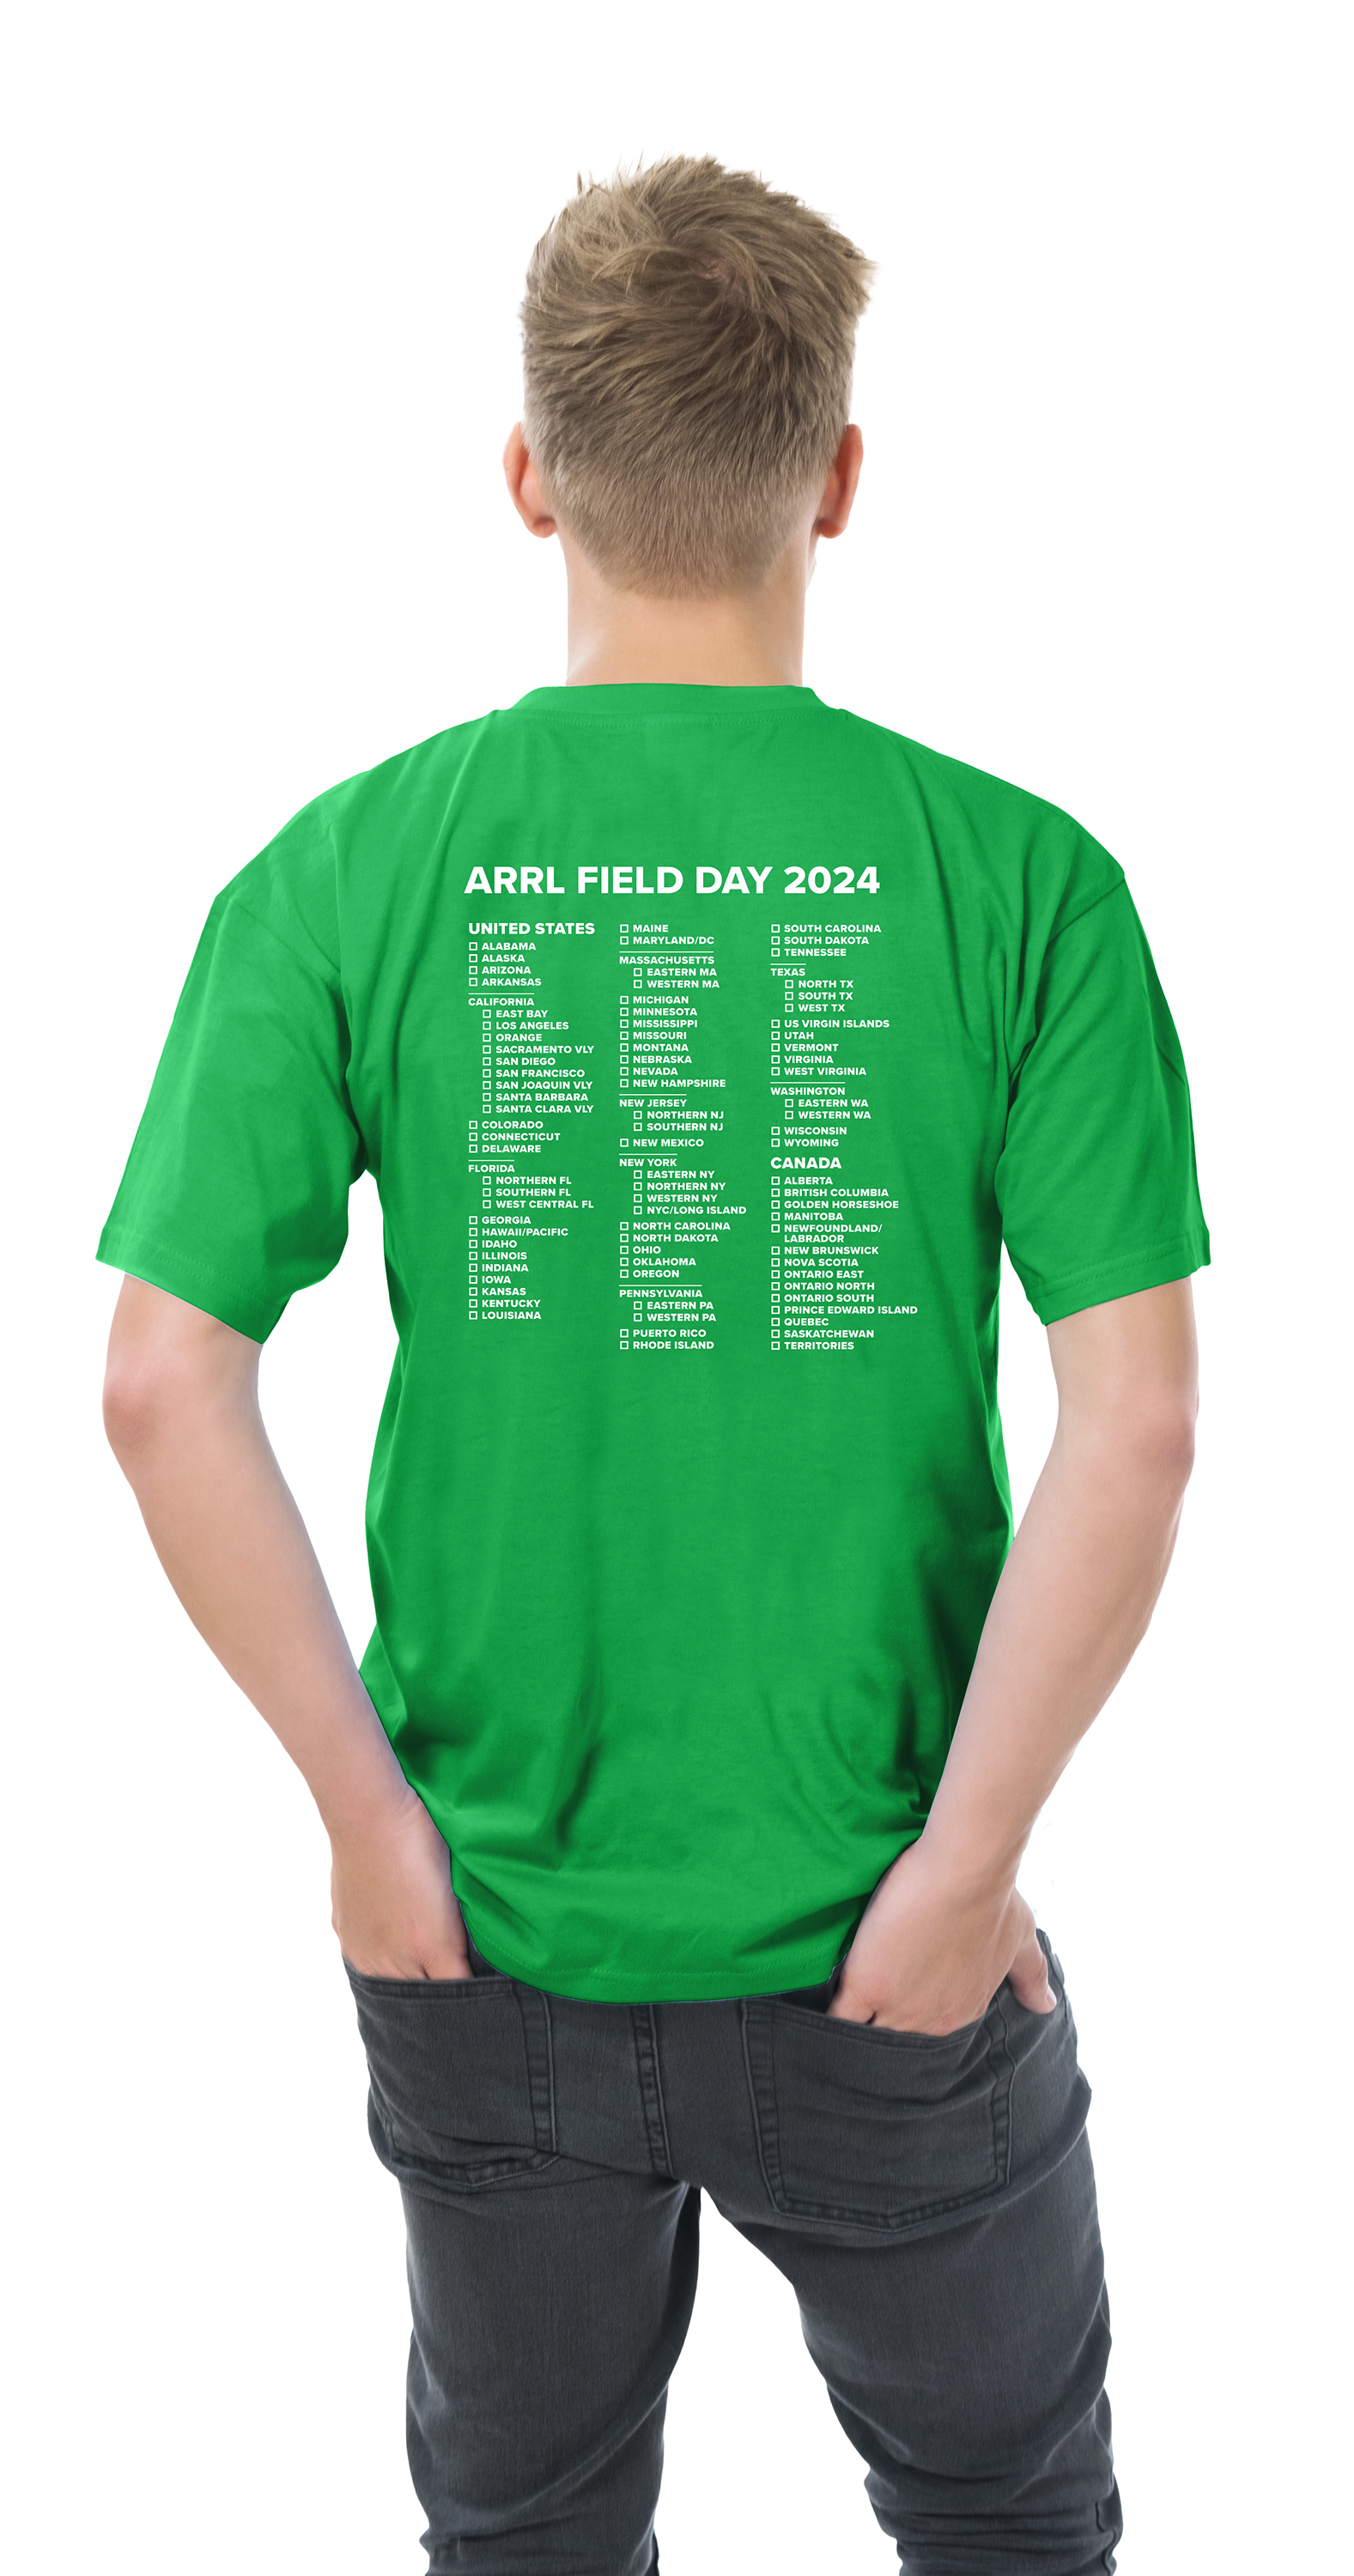 2024 ARRL Field Day gear is now shipping!